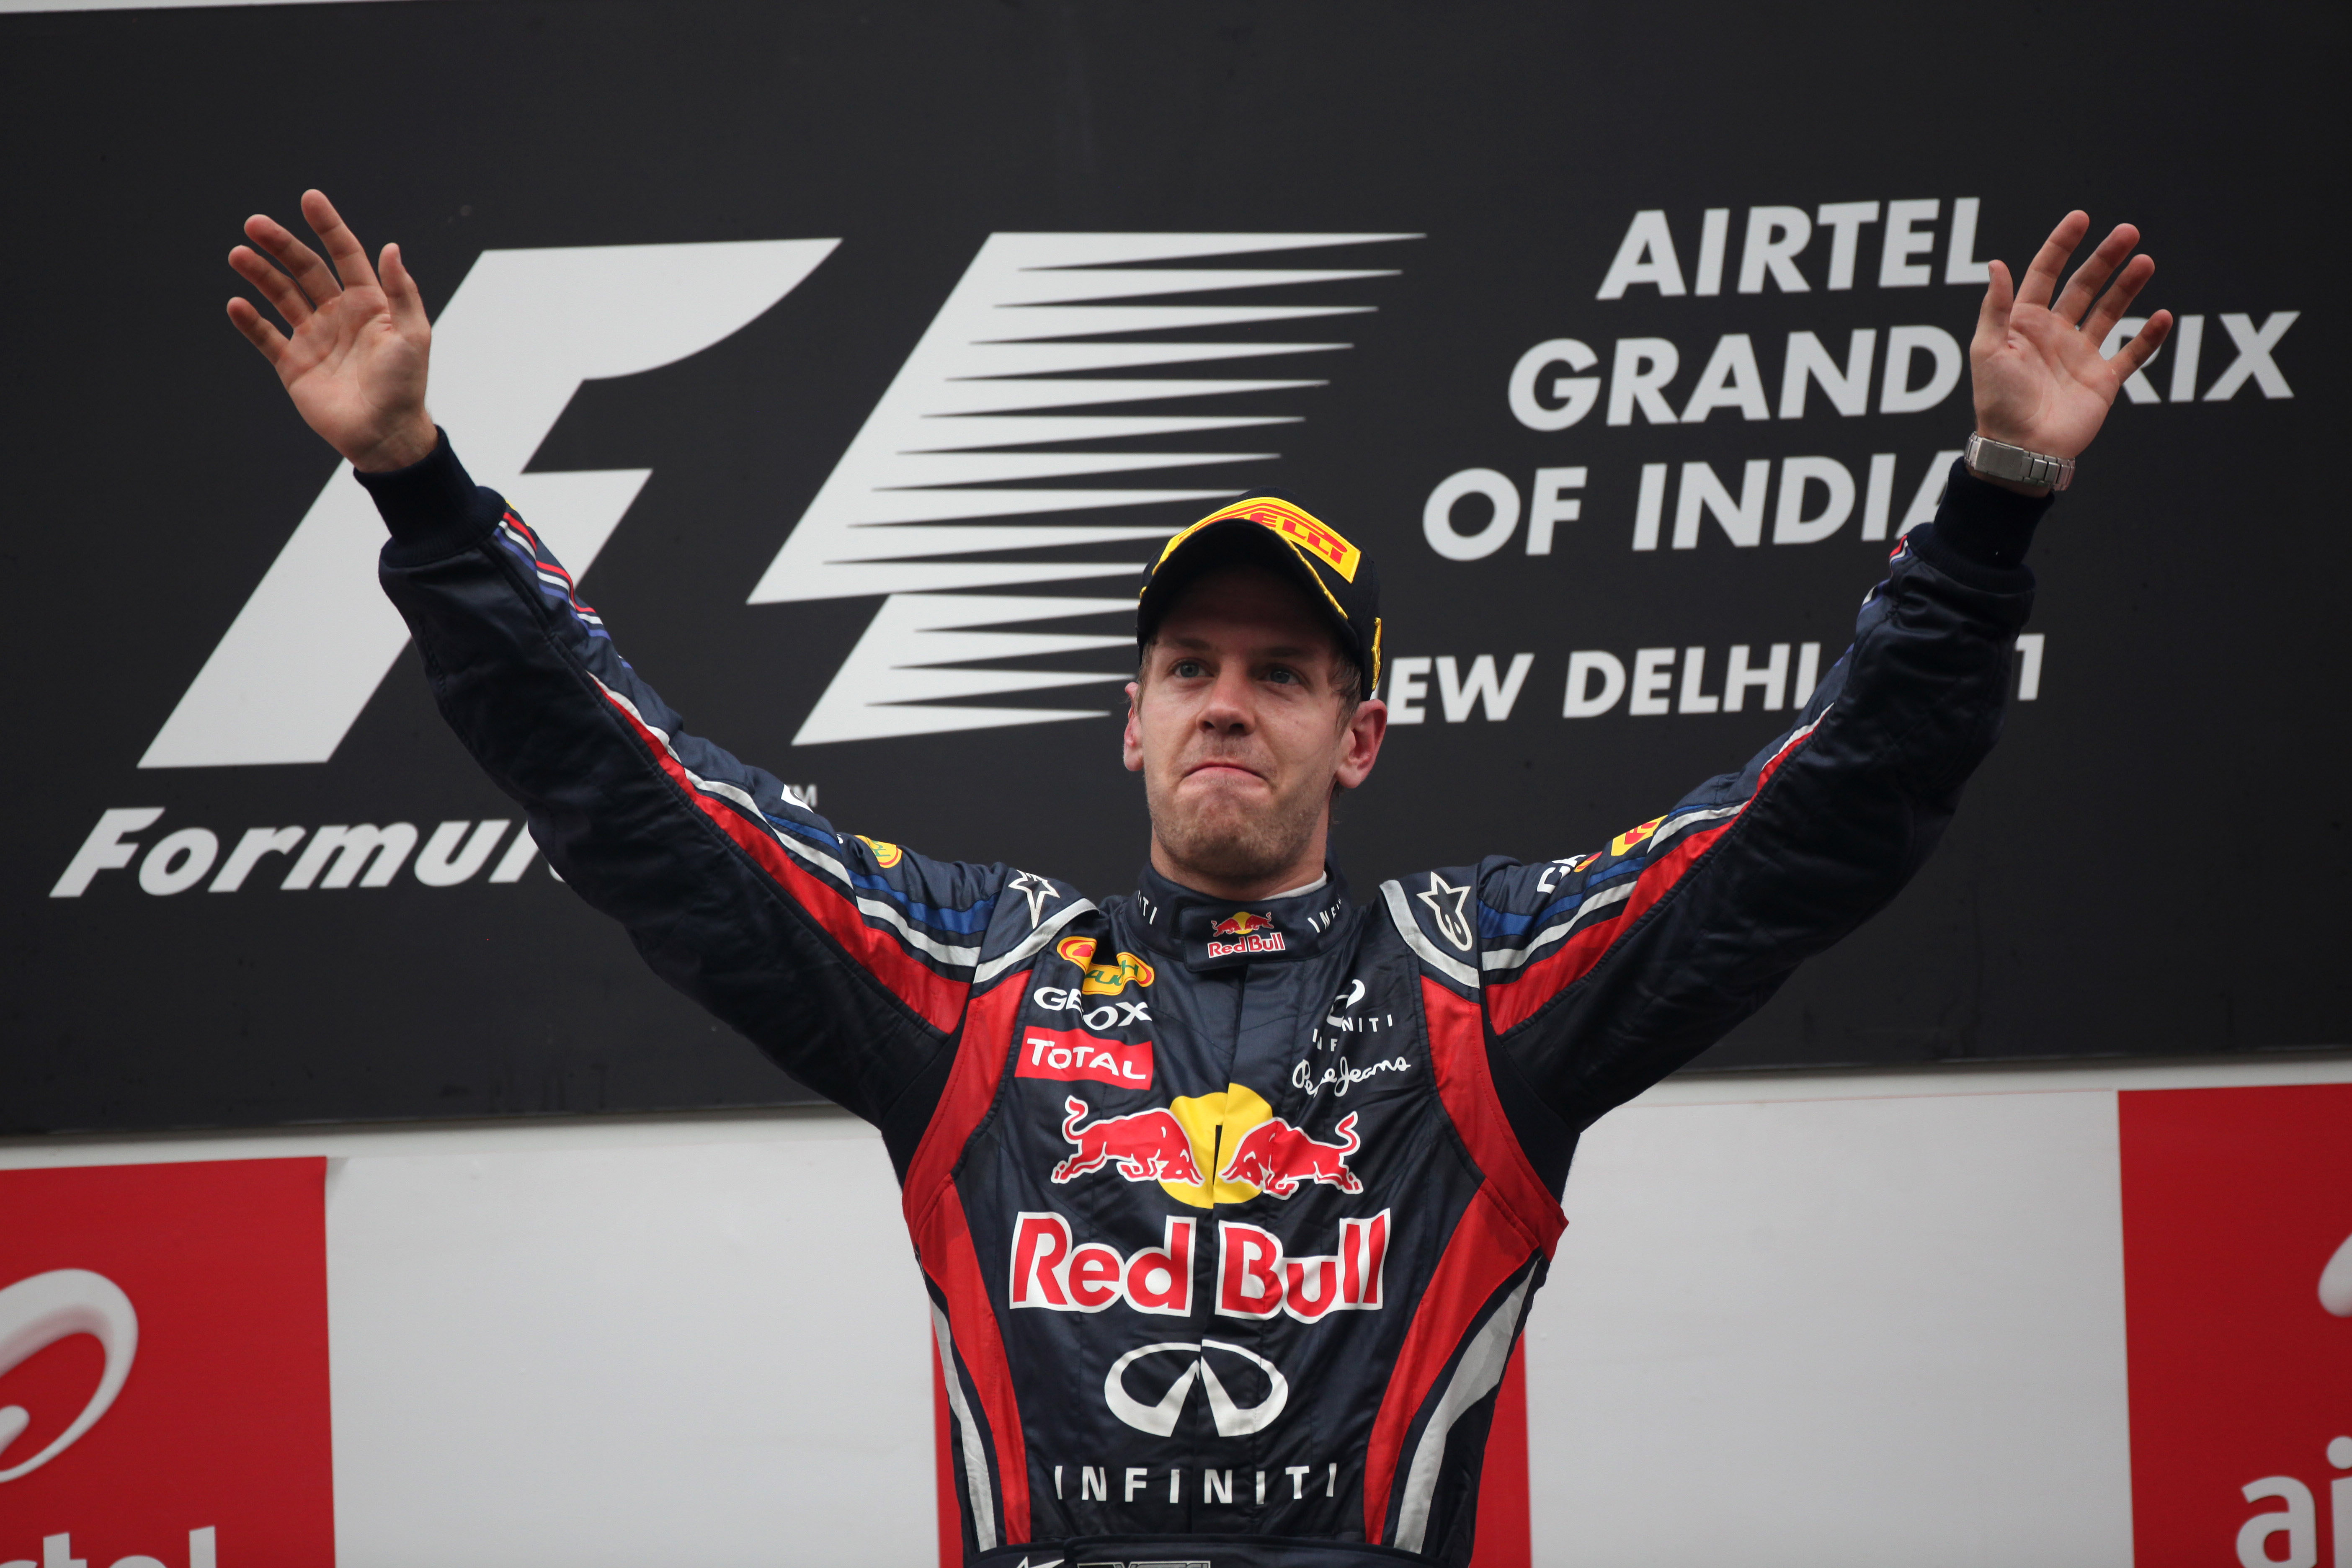 Vettel trots op zege in eerste Indiase Grand Prix